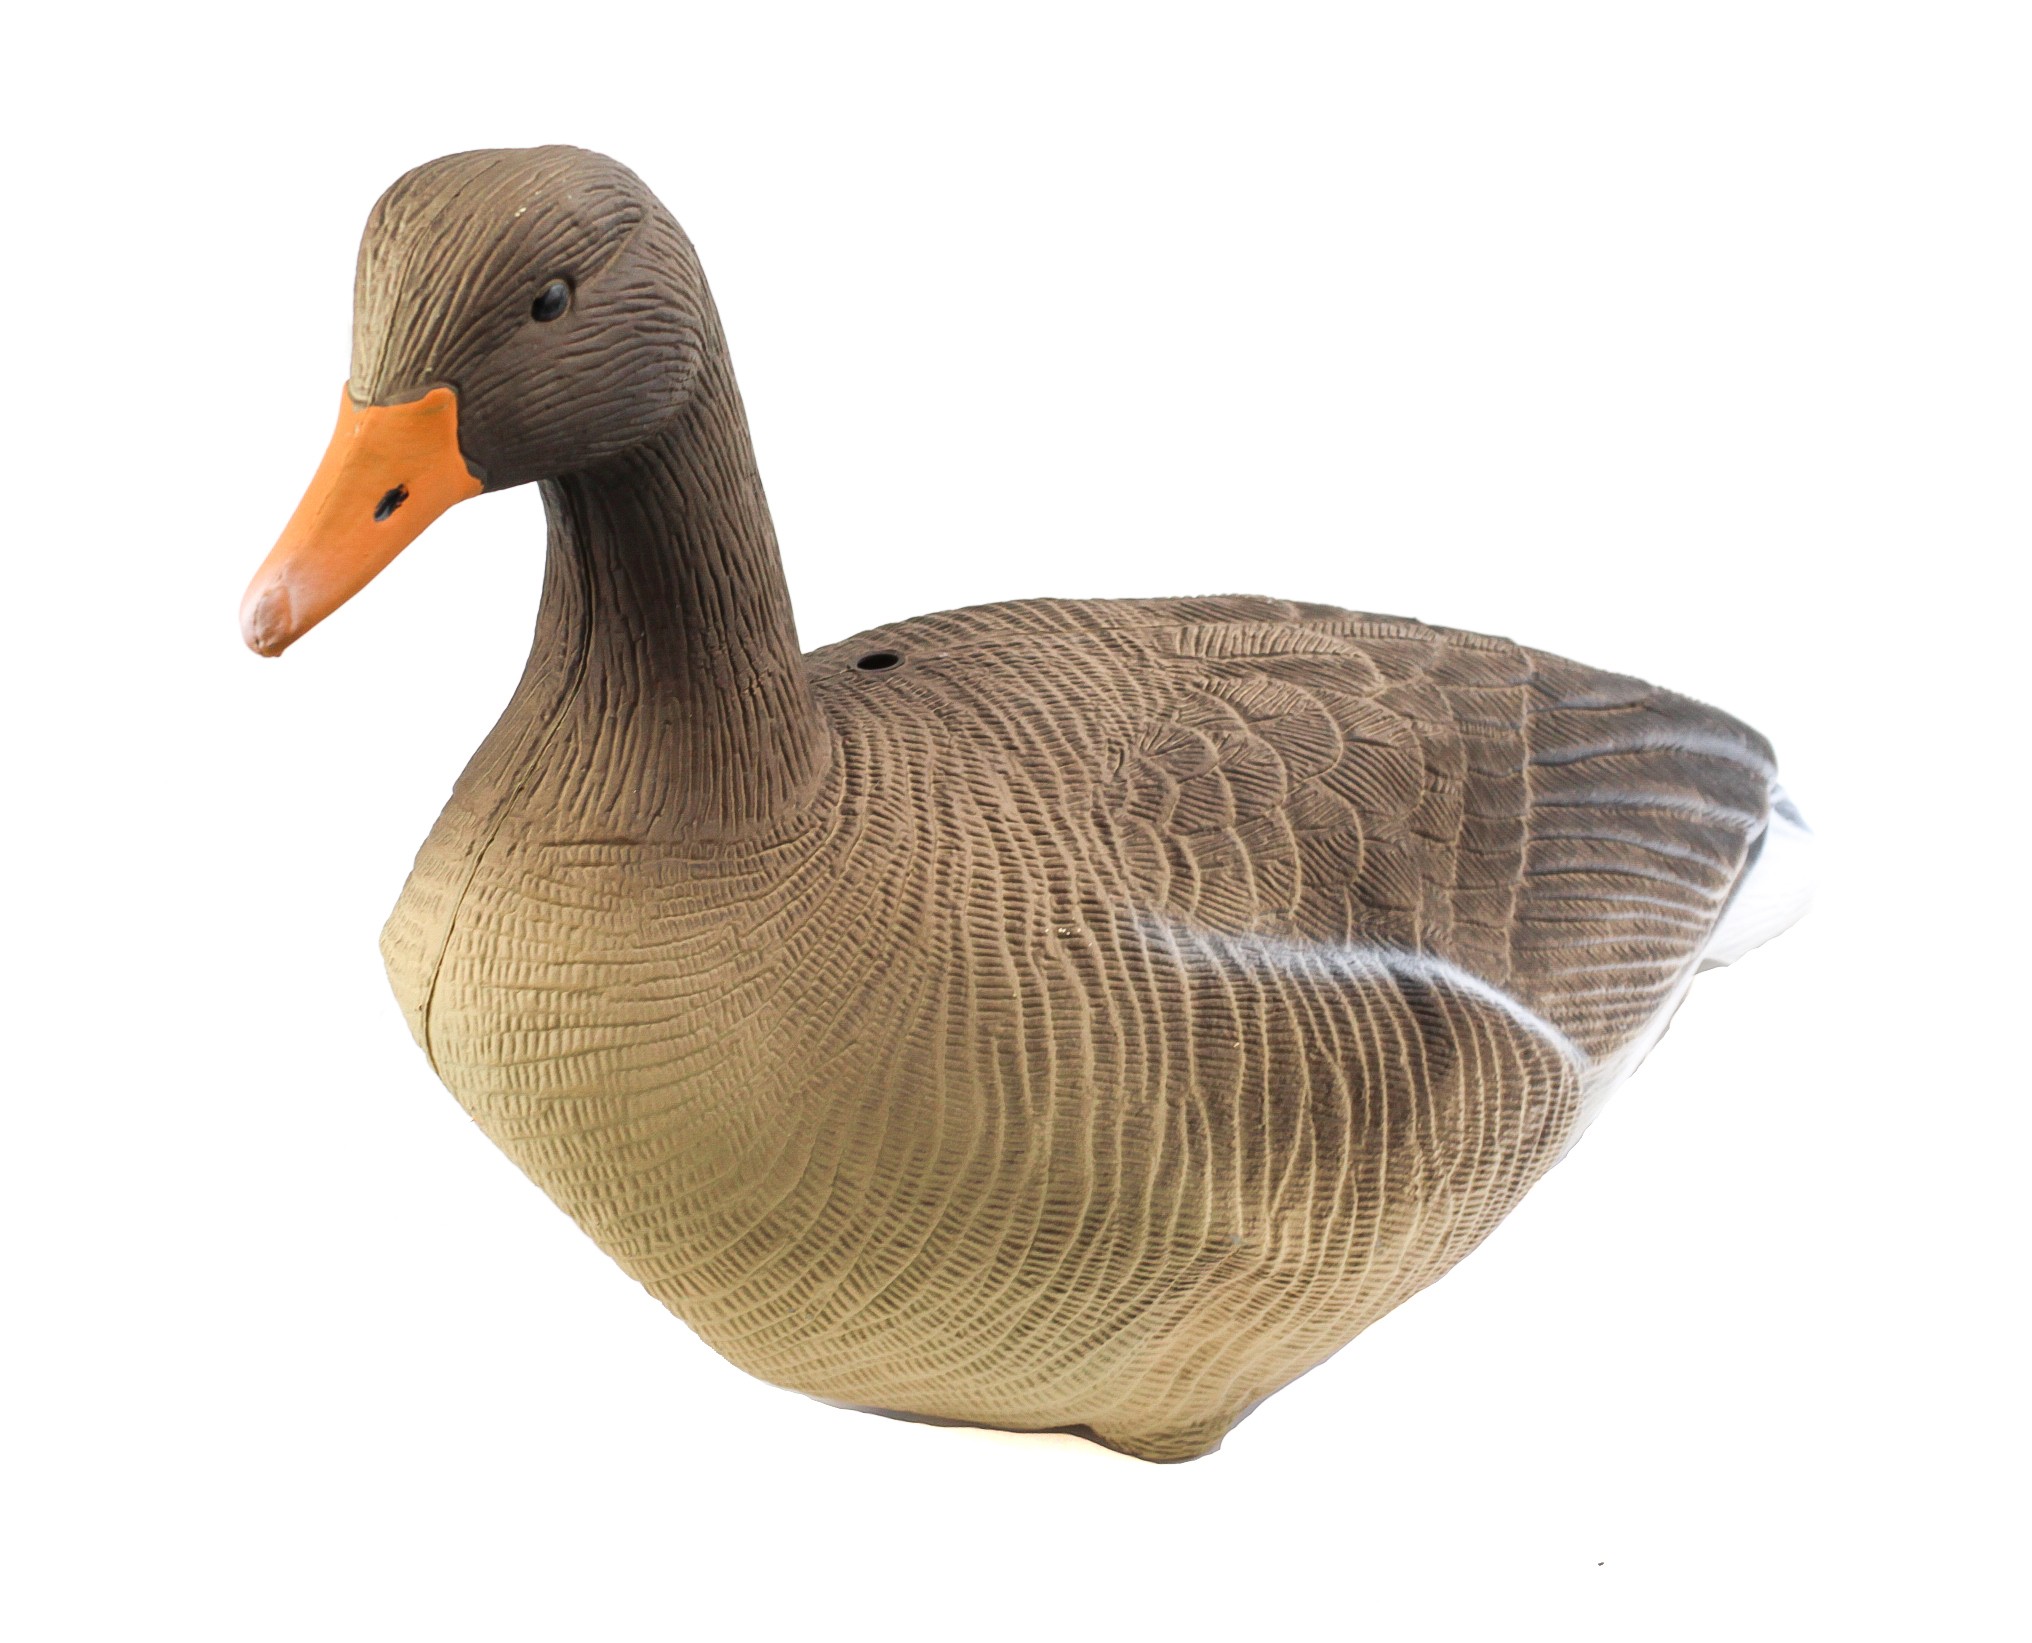 Подсадной гусь Floater Greylag Goose серый мягкий 10шт - фото 1